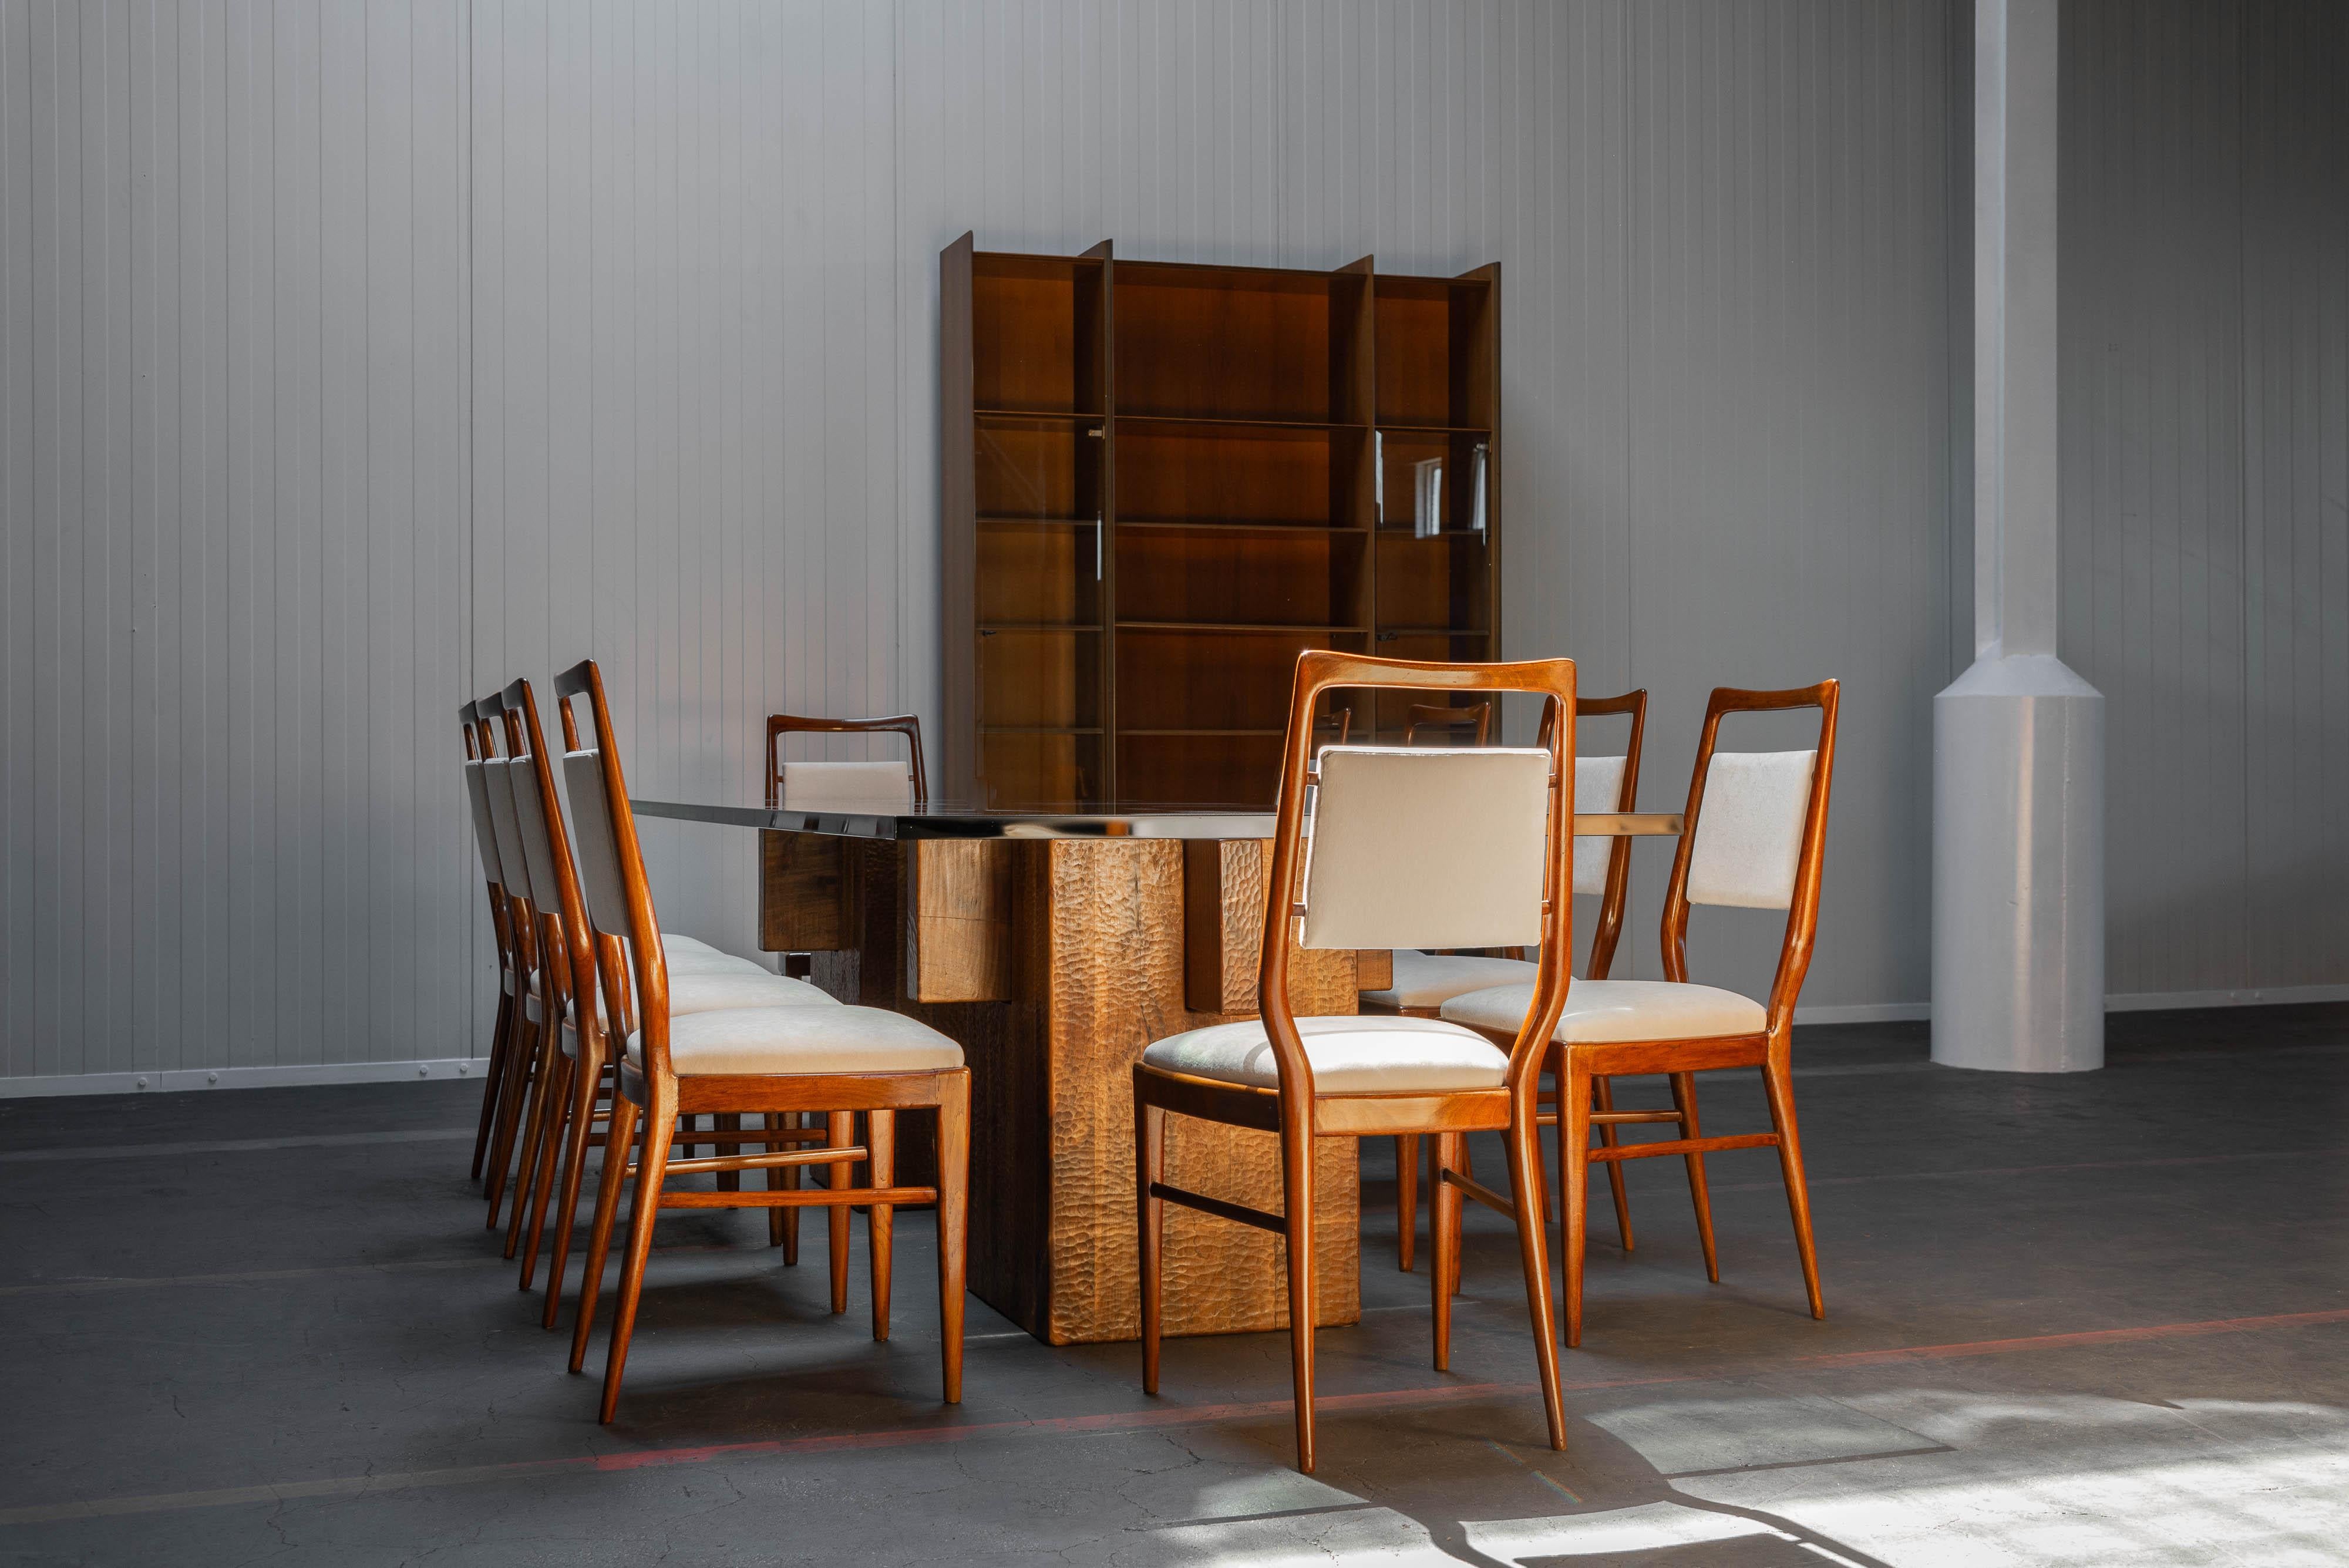 Einzigartige Vittorio Dassi Esszimmerstühle hergestellt in Italien 1950. Die Stühle haben schön geformte Teakholzrahmen und die Sitze wurden mit einem weichen cremefarbenen Samtstoff neu gepolstert. Das Besondere an diesen Stühlen ist ihr